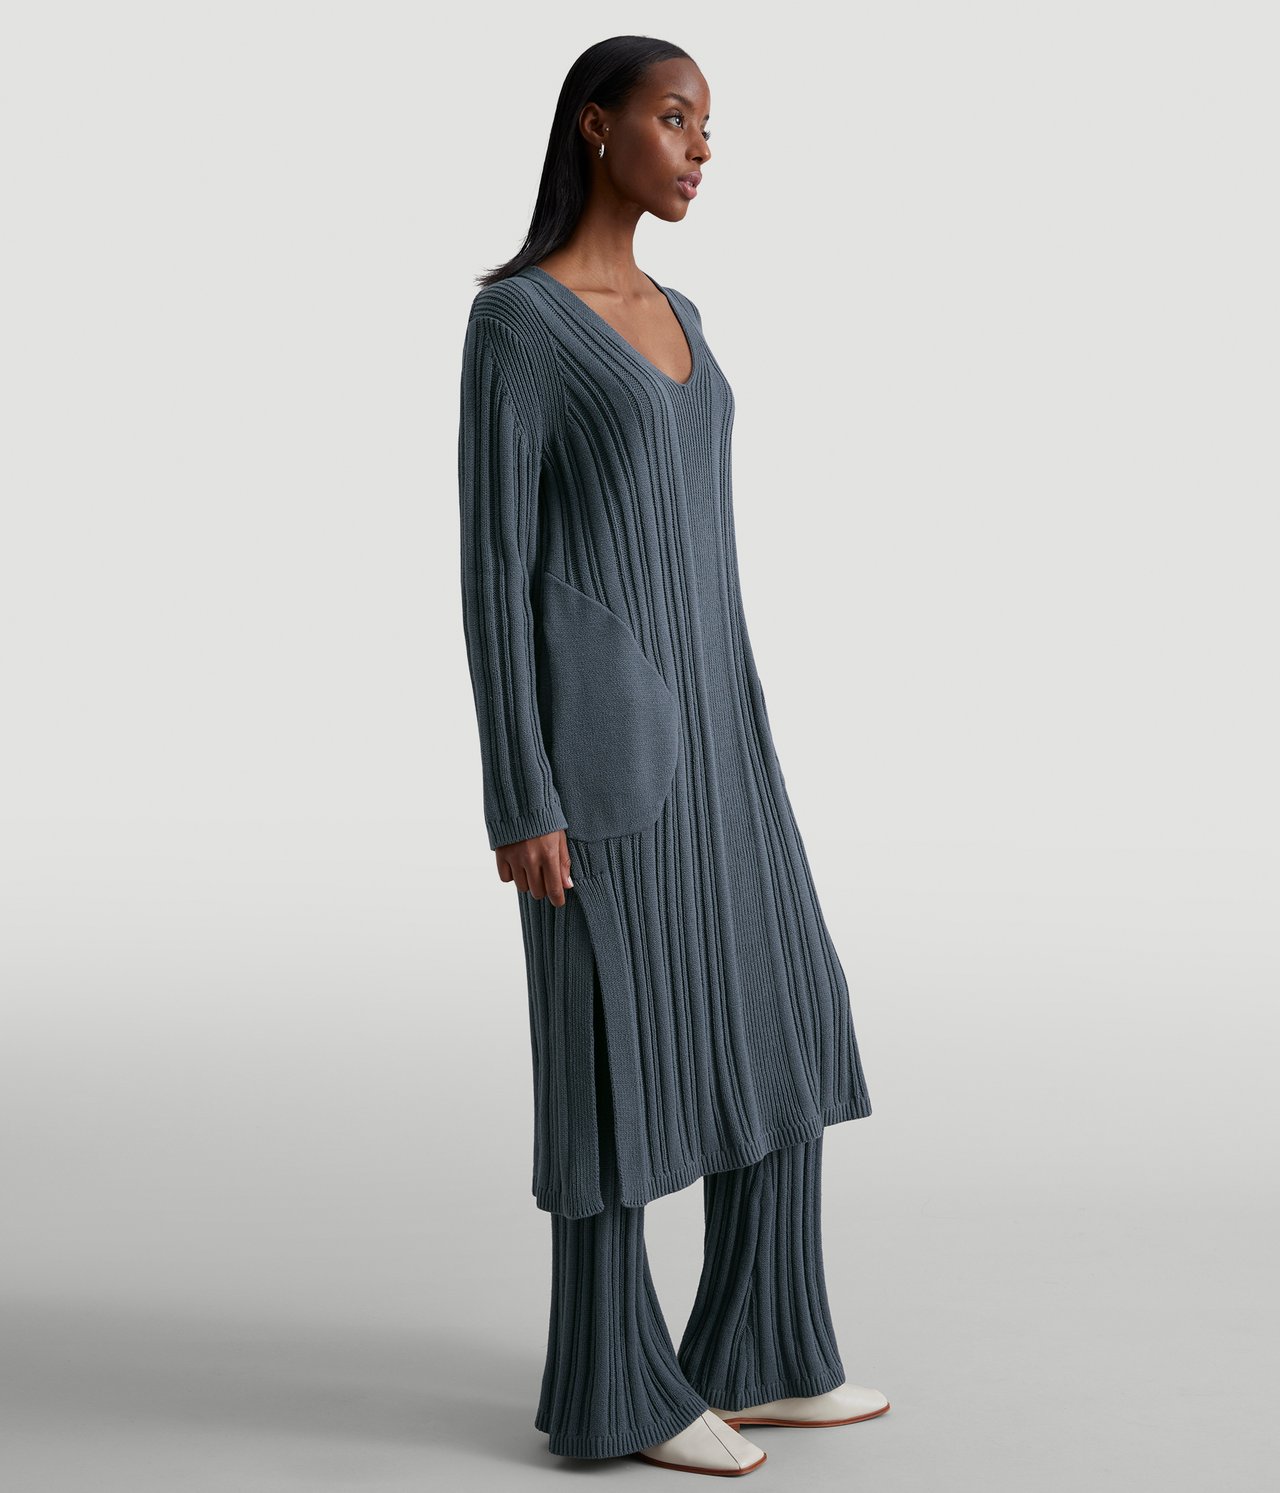 Ribbestrikket kjole - Mørkeblå - 177cm / Storlek: S - 2